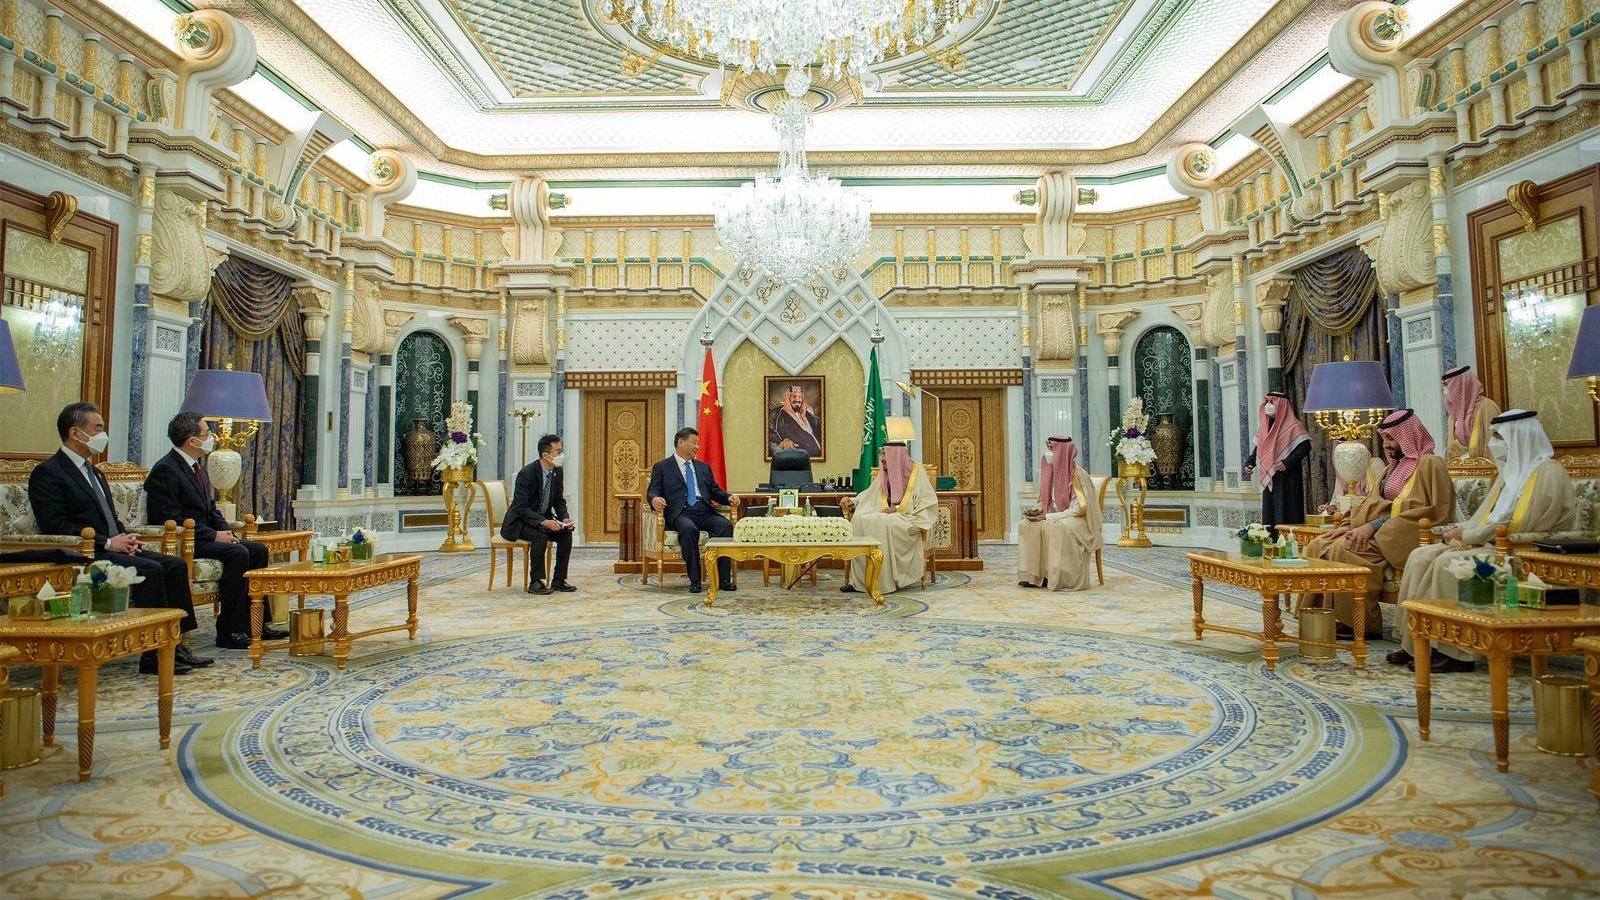 الملك السعودي سلمان بن عبدالعزيز والرئيس الصيني شي جينبينغ يجتمعان في قصر اليمامة في الرياض، بحضور ولي العهد السعودي محمد بن سلمان والوفد السعودي المشارك بالإضافة إلى وفد صيني (واس)